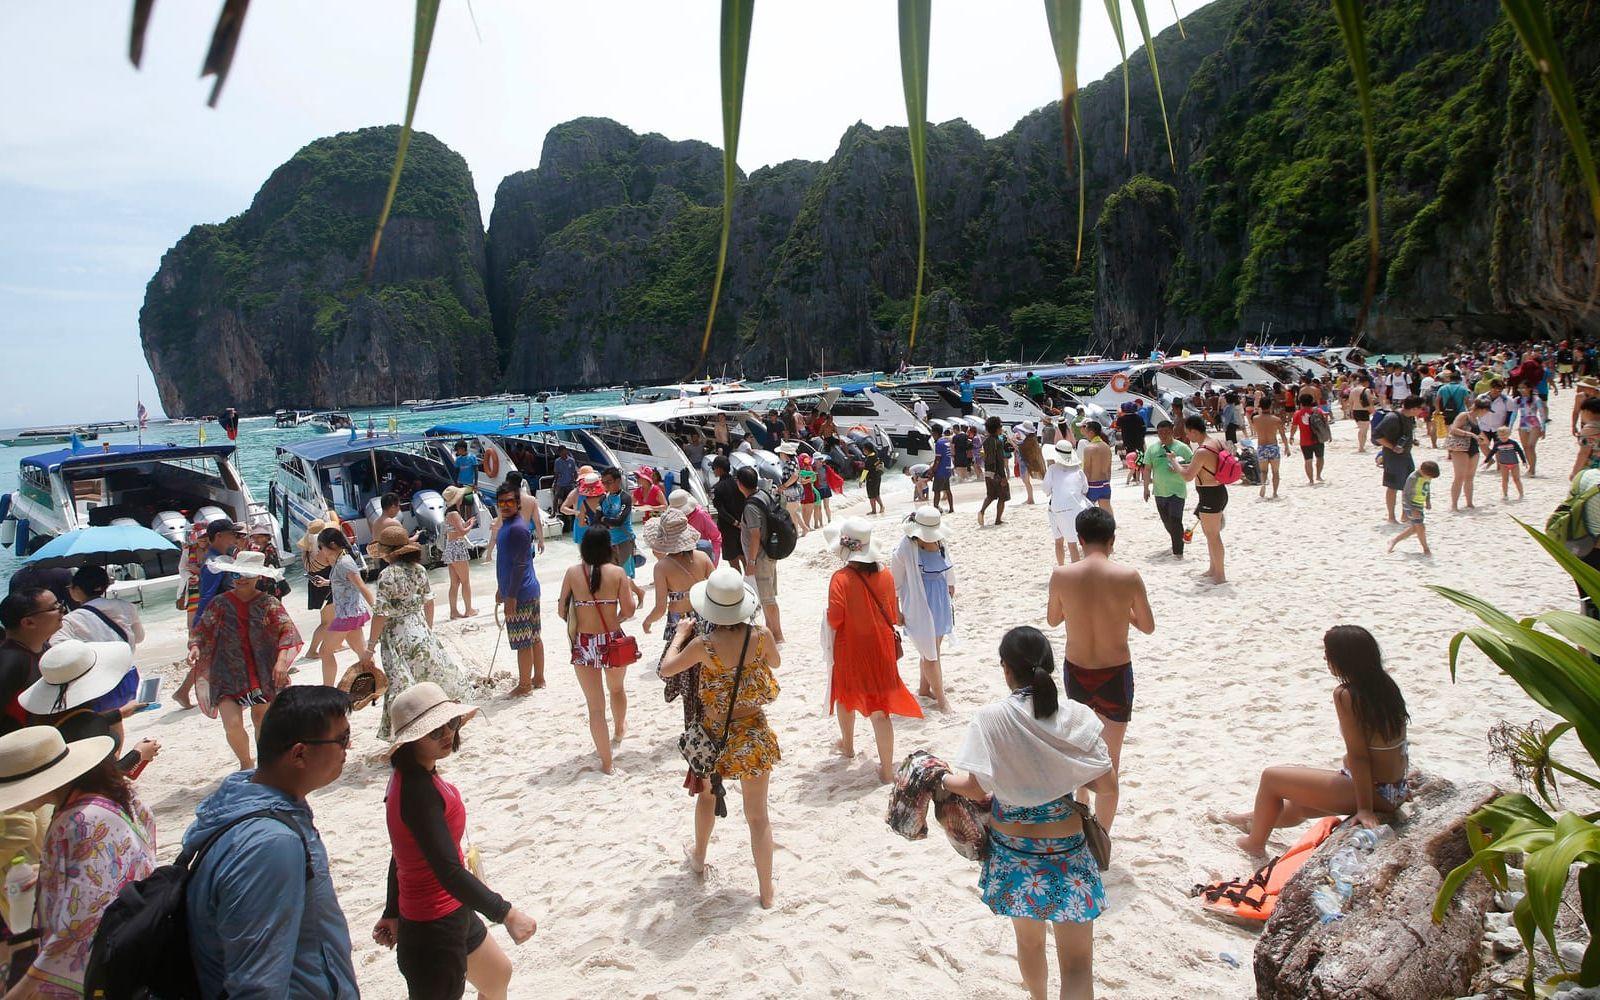 Varje dag anlände omkring 5 000 besökare med båt till stranden Maya Bay – vilket har fått katastrofala följder. 